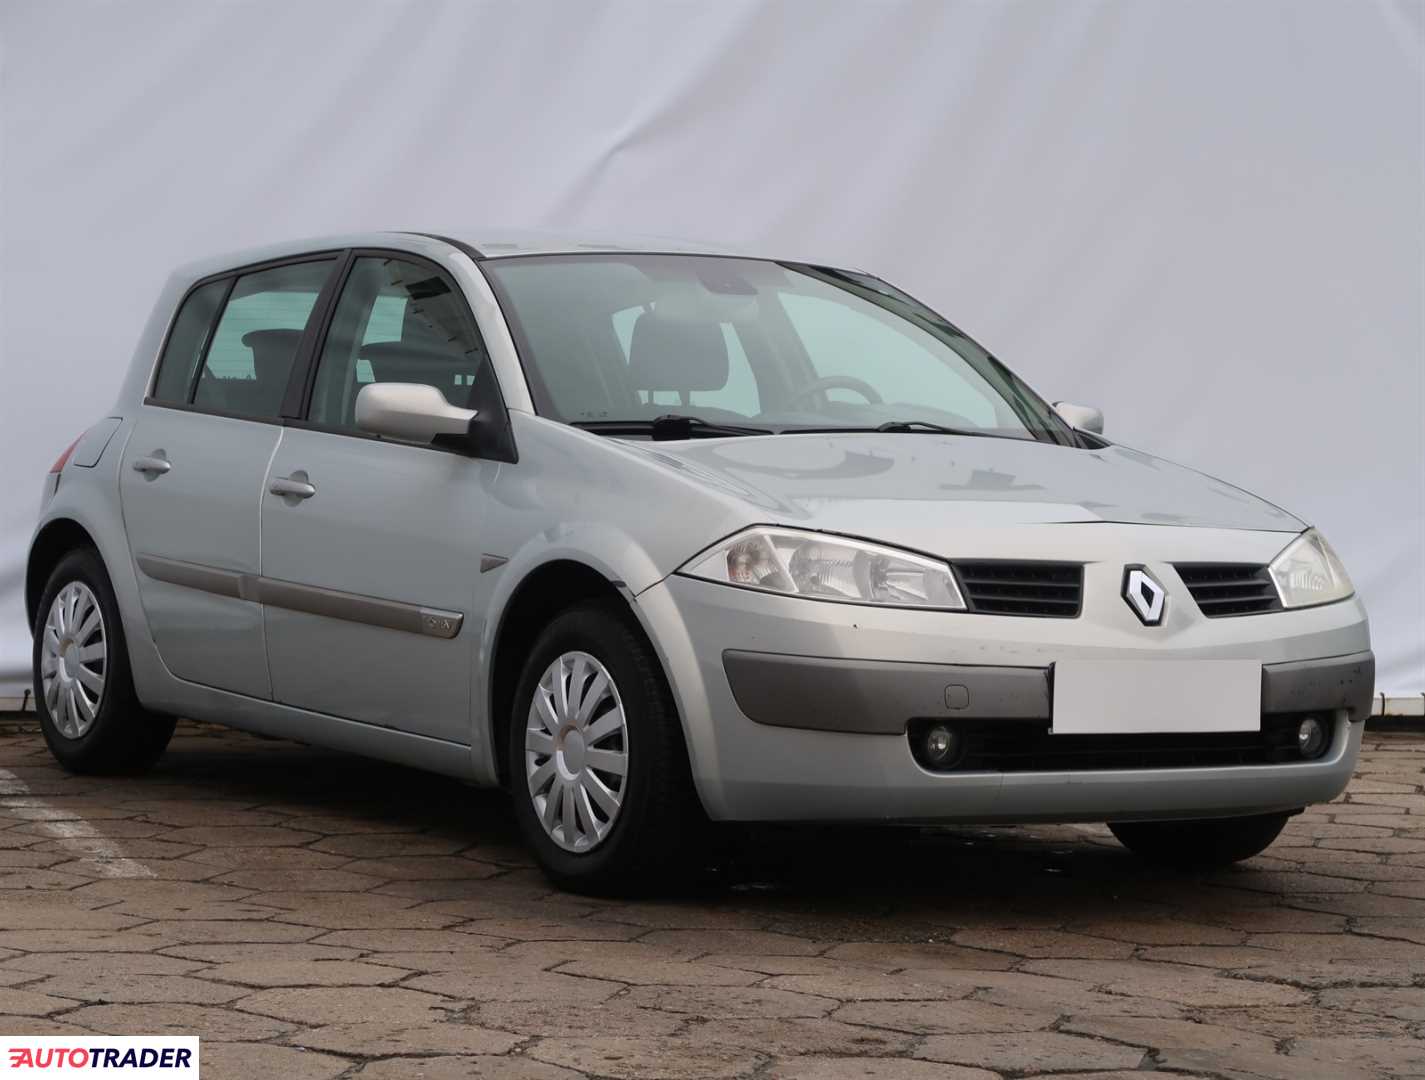 Renault Megane 2003 1.6 111 KM